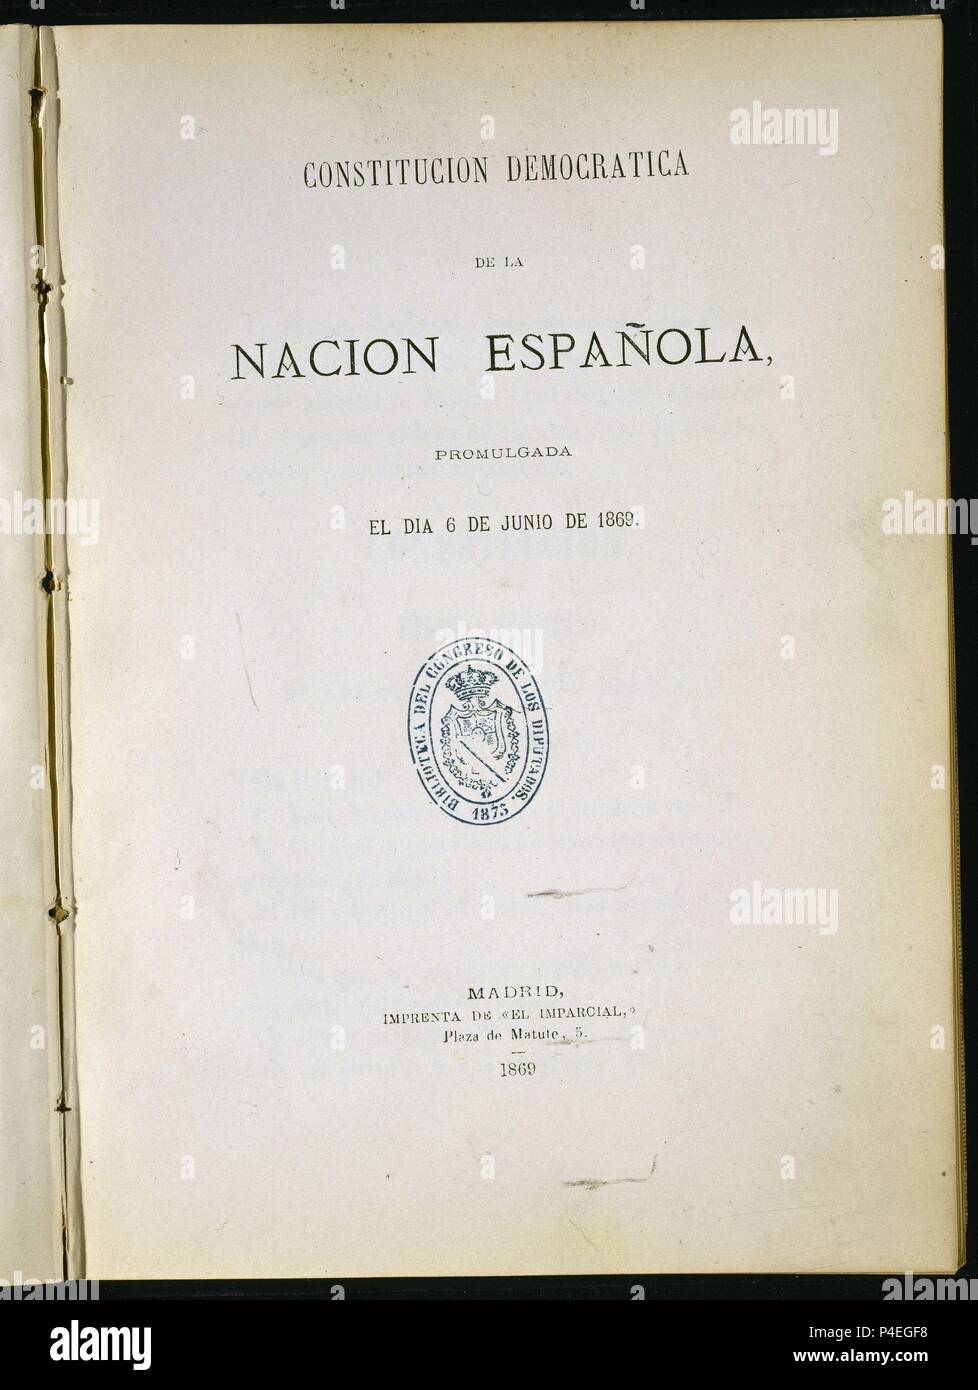 CONSTITUCION DEMOCRATICA DE LA NACION ESPAÑOLA PROMULGADA 6/6/1869-PORTADA. Location: CONGRESO DE LOS DIPUTADOS-BIBLIOTECA, MADRID, SPAIN. Stock Photo